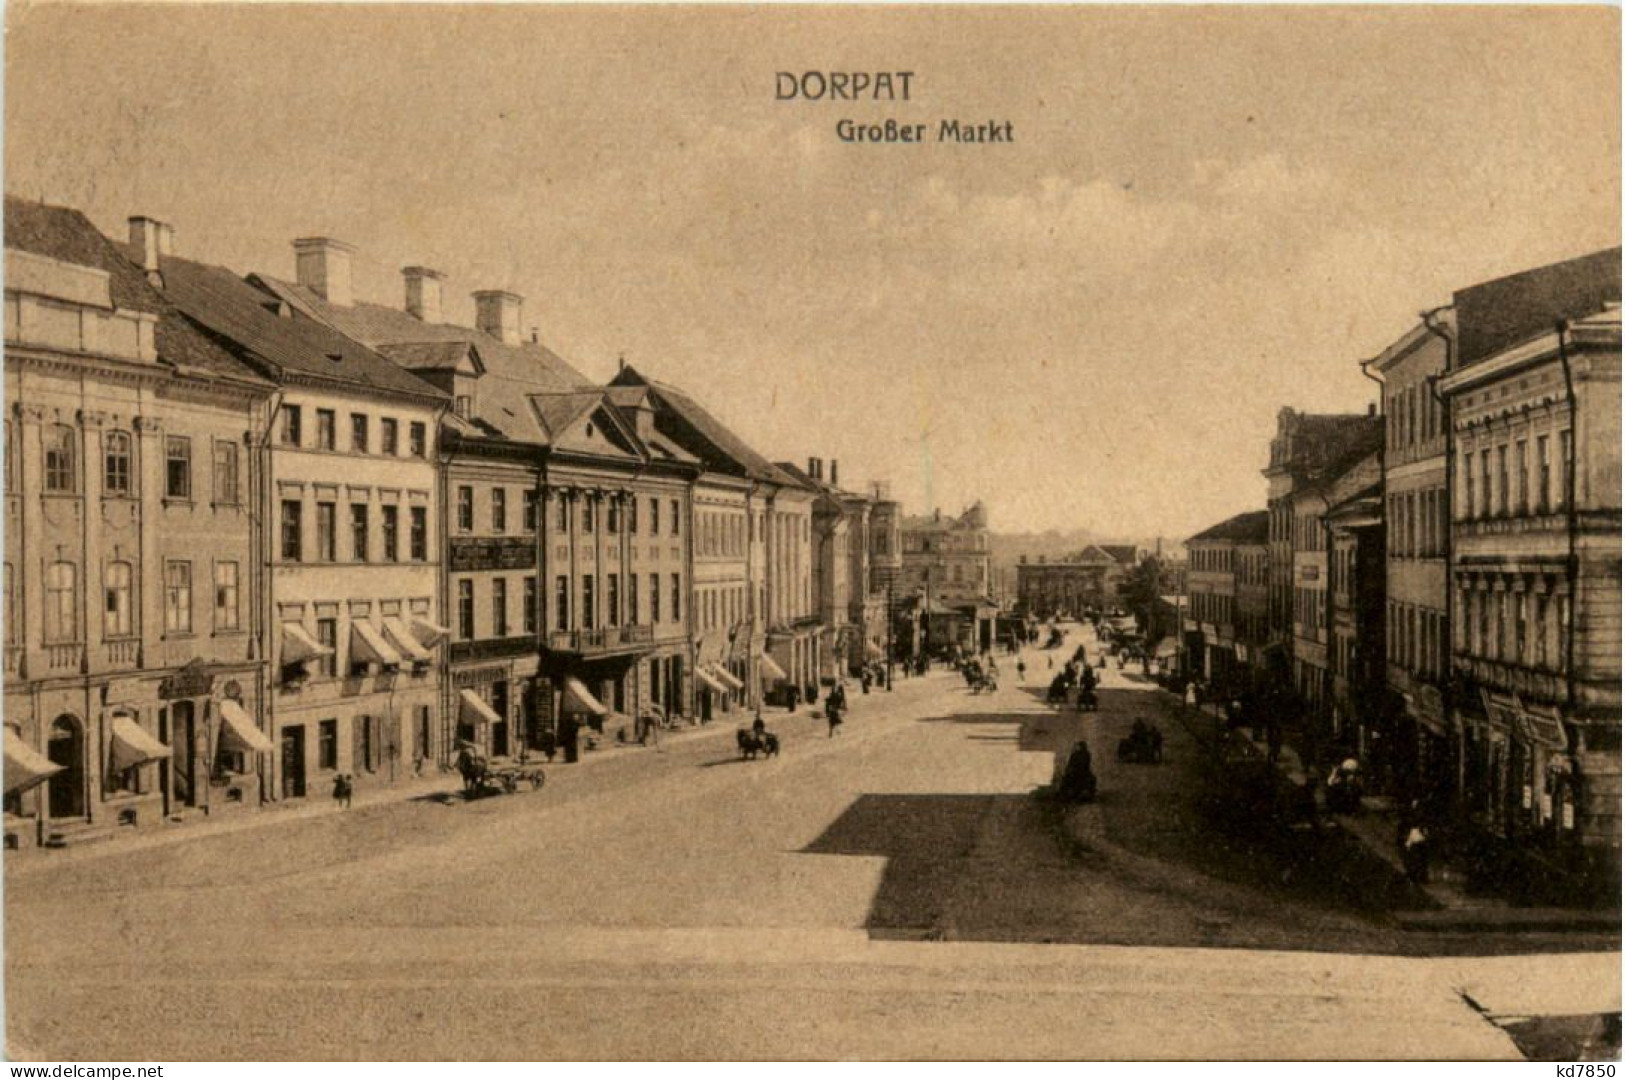 Dorpat - Grosser Markt - Estonia